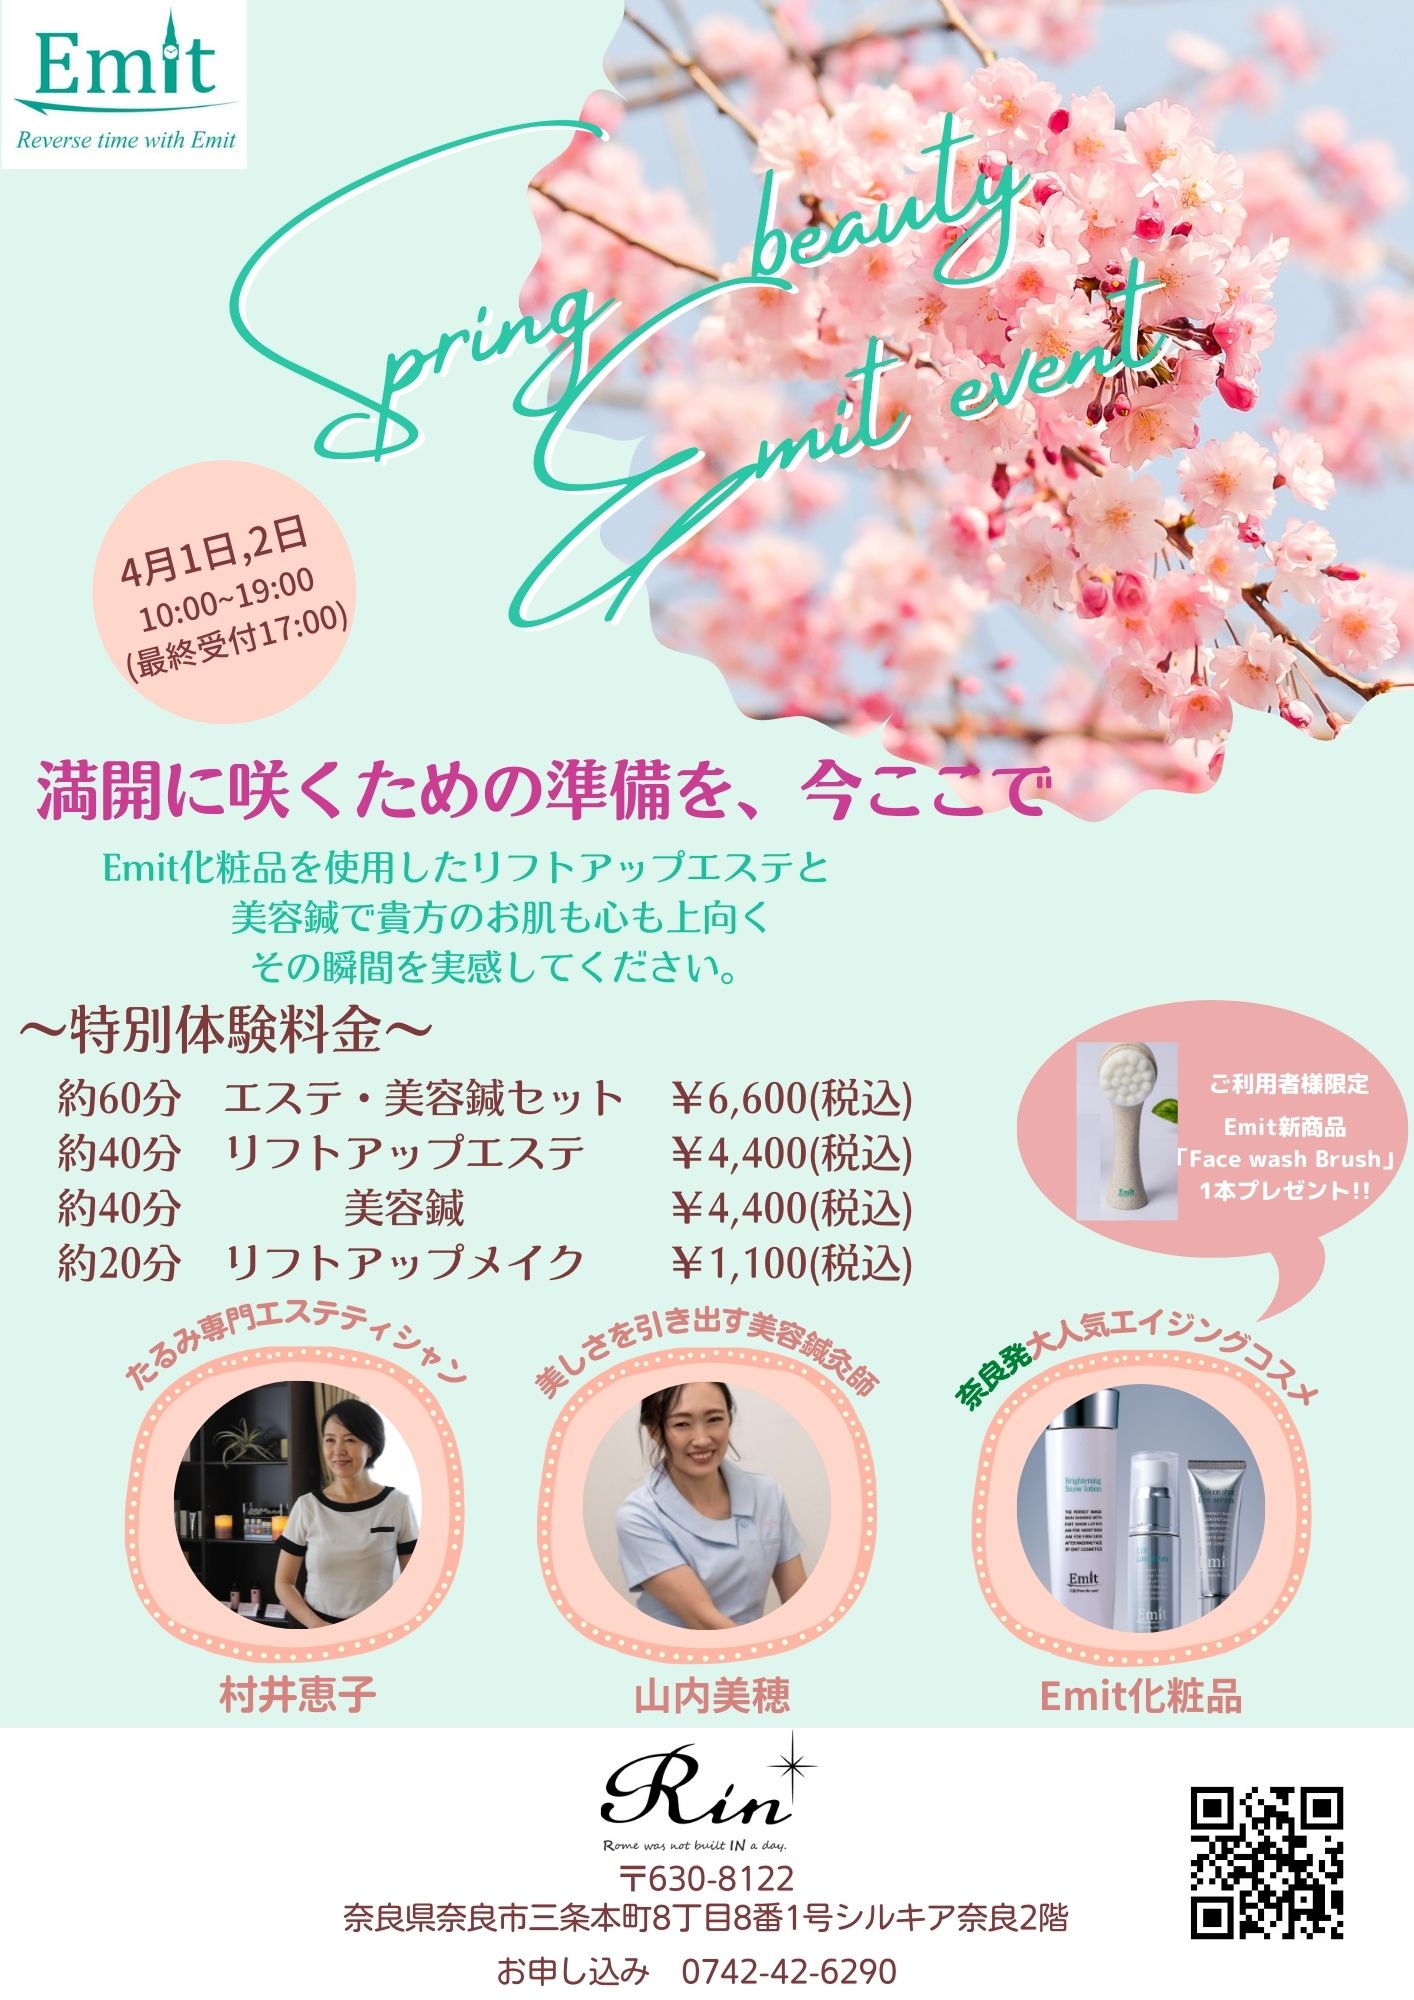 エステ×美容鍼灸×コスメのコラボイベント【Spring beauty Emit event】を開催します！